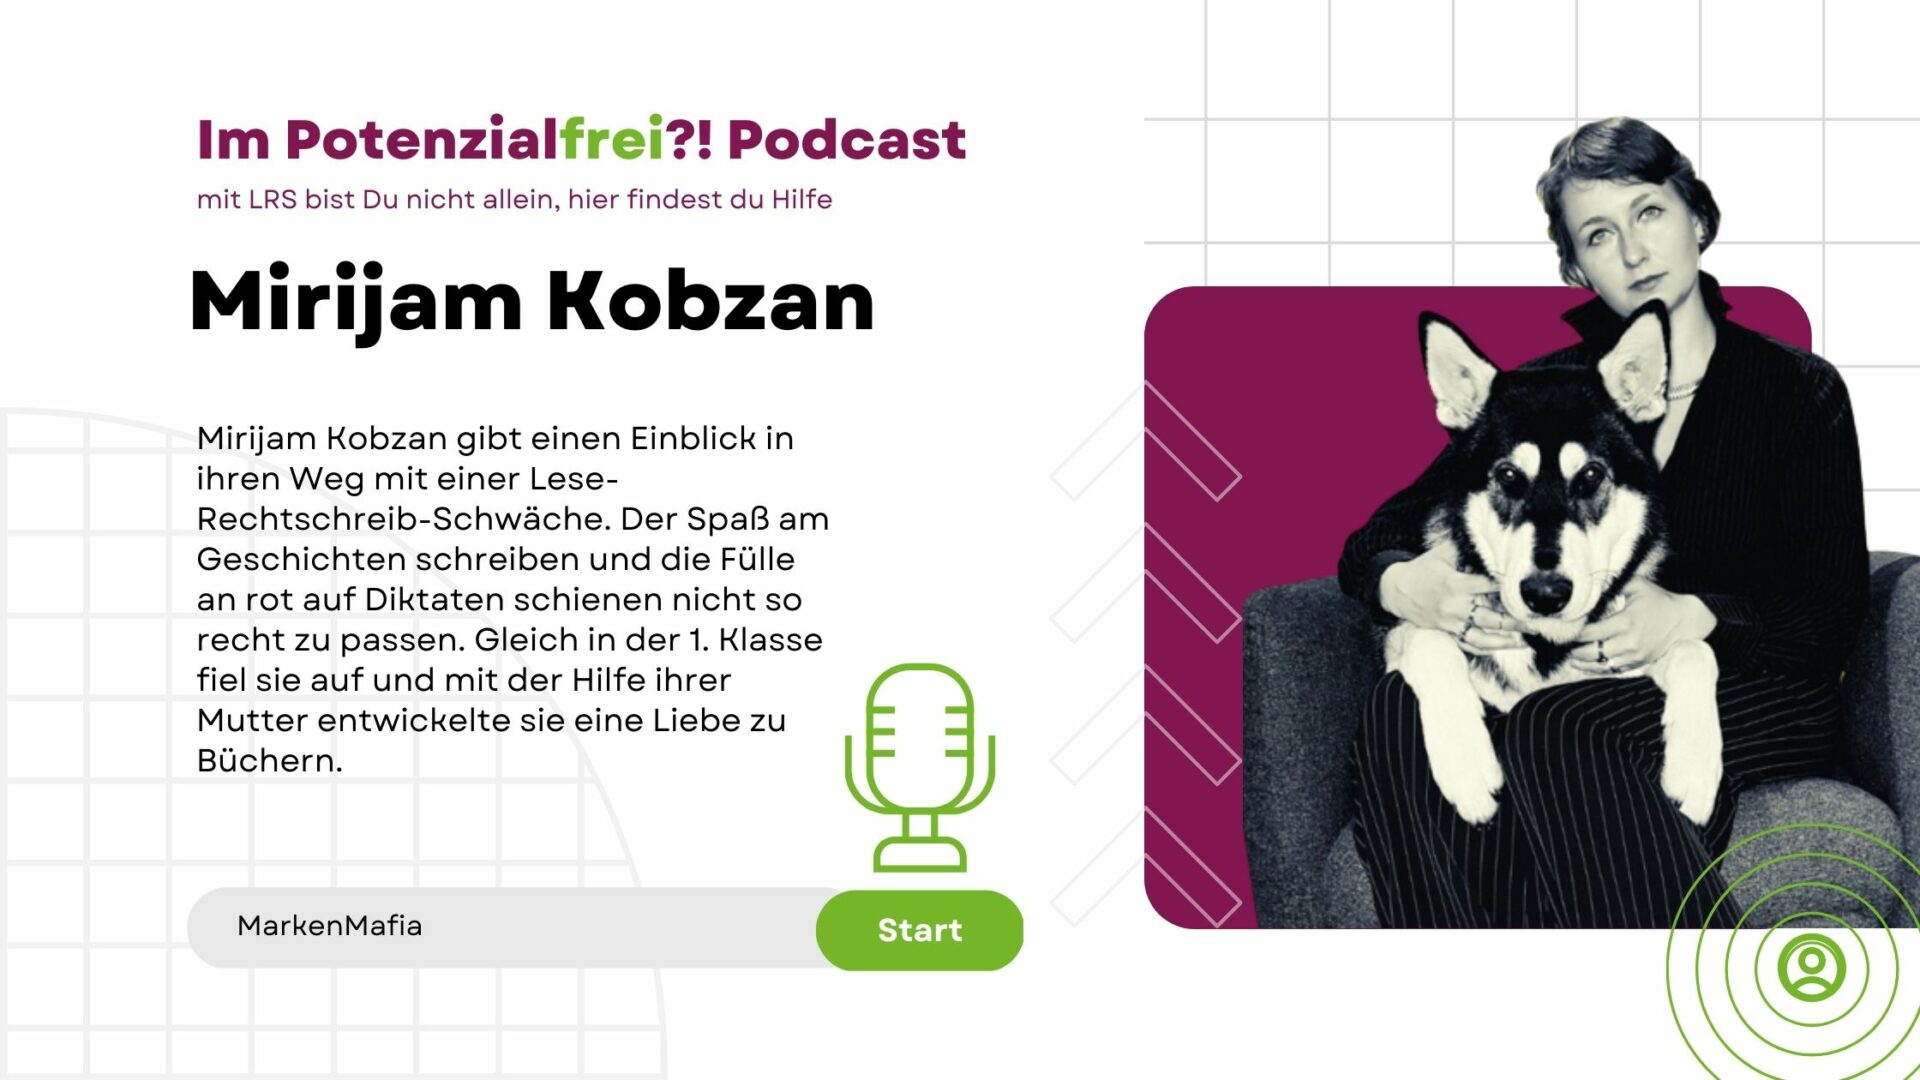 Mirijam Kobzan von der MarkenMafia im Potenzialfrei! Podcast